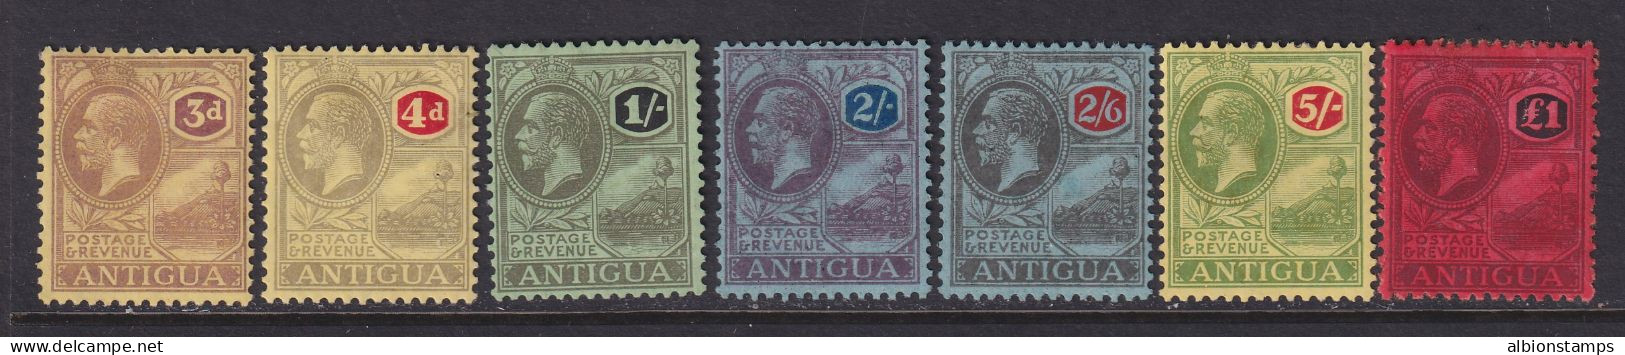 Antigua, Scott 58-64 (SG 55-61), MHR (£1 Some Album Remnants) - 1858-1960 Kolonie Van De Kroon